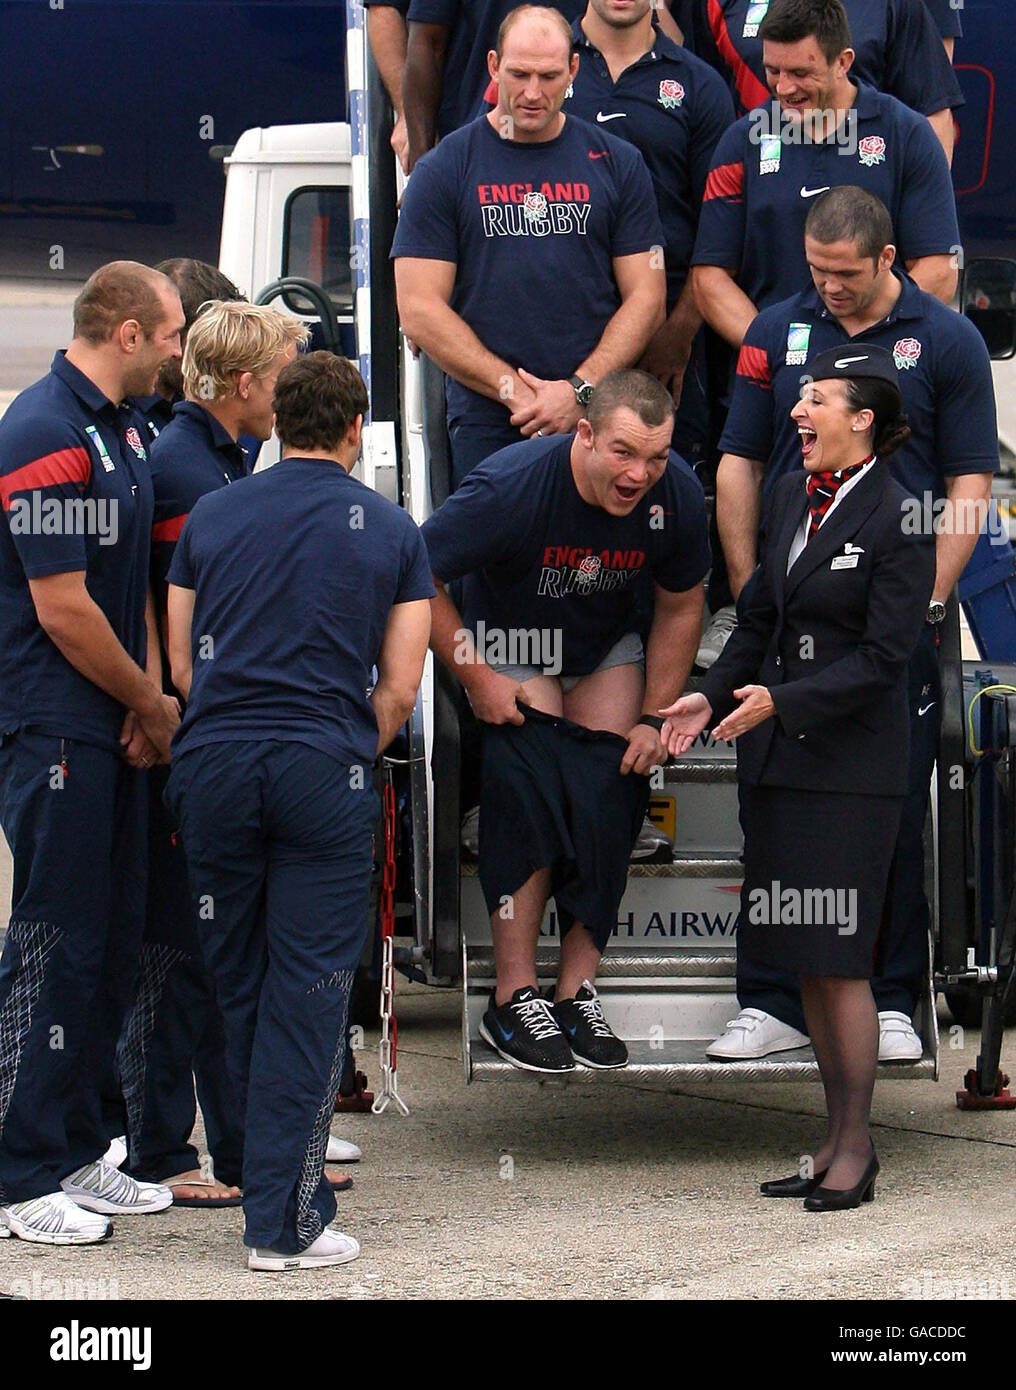 Matt Stevens, de Inglaterra, lleva sus pantalones cortos después de que el equipo de rugby llegara al aeropuerto de Heathrow, Londres. Foto de stock